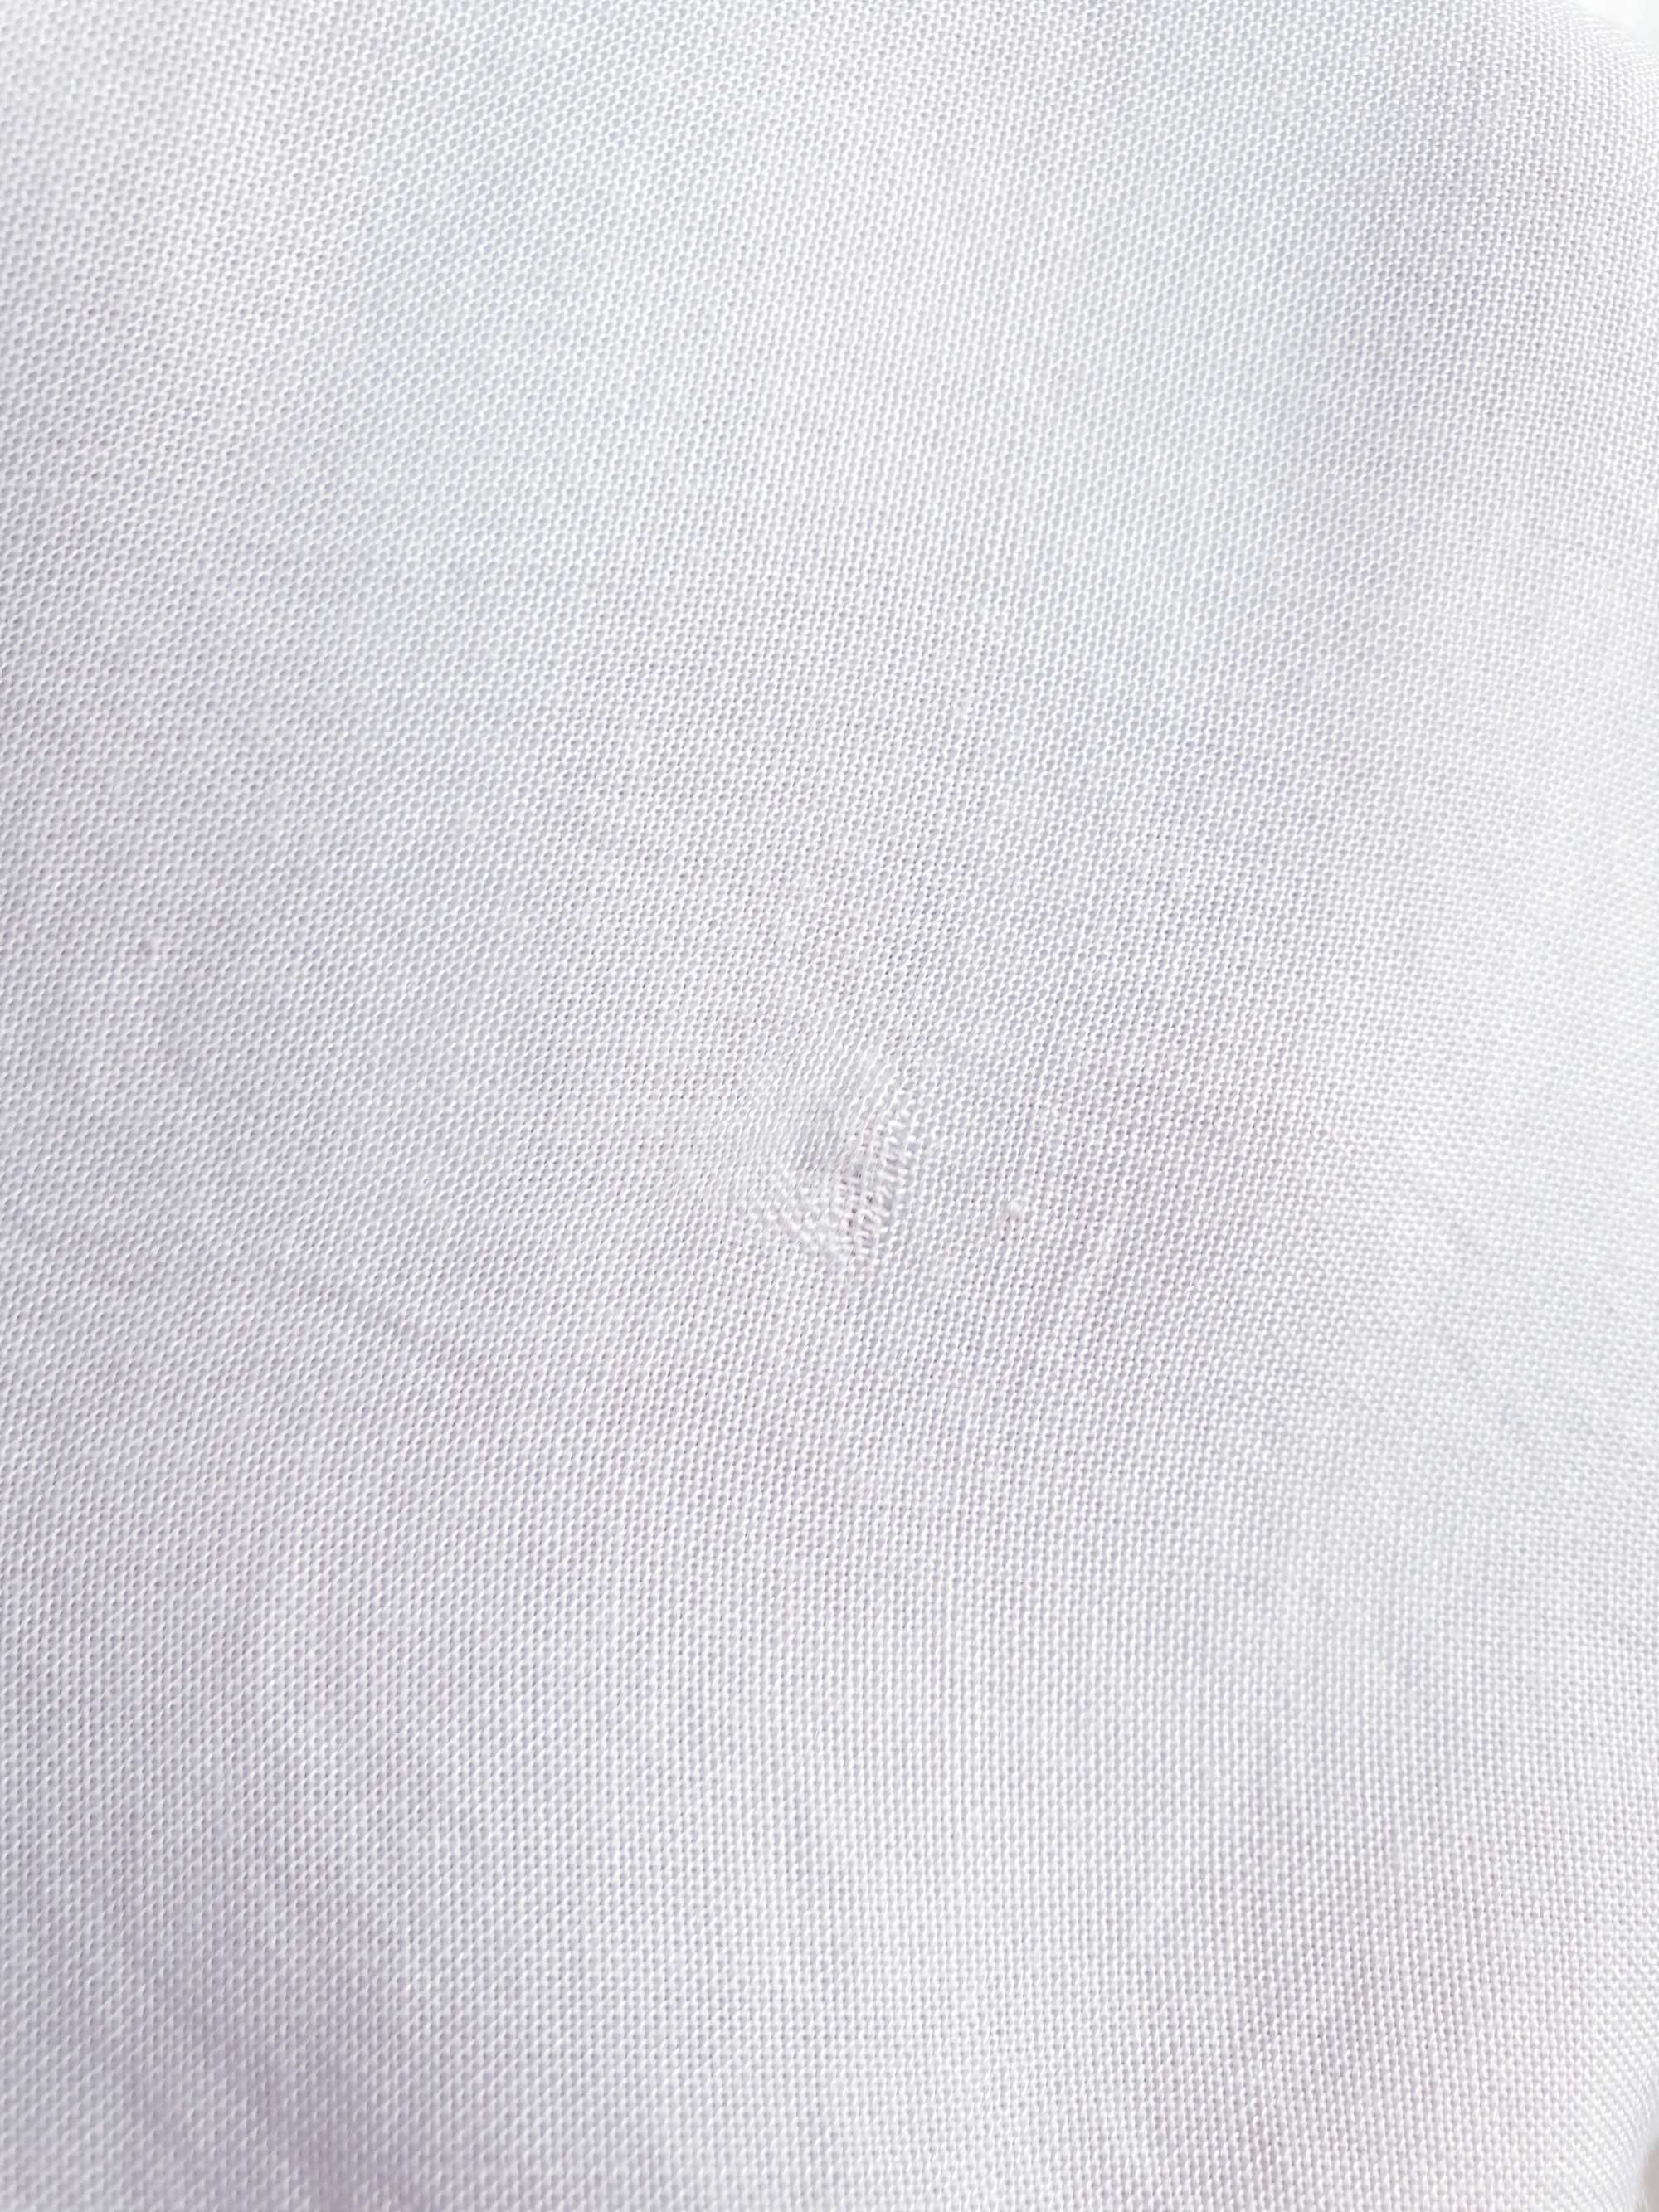 Biała bluzka koszulka z wiskozy Peacocks 42 wyszywana haftowana